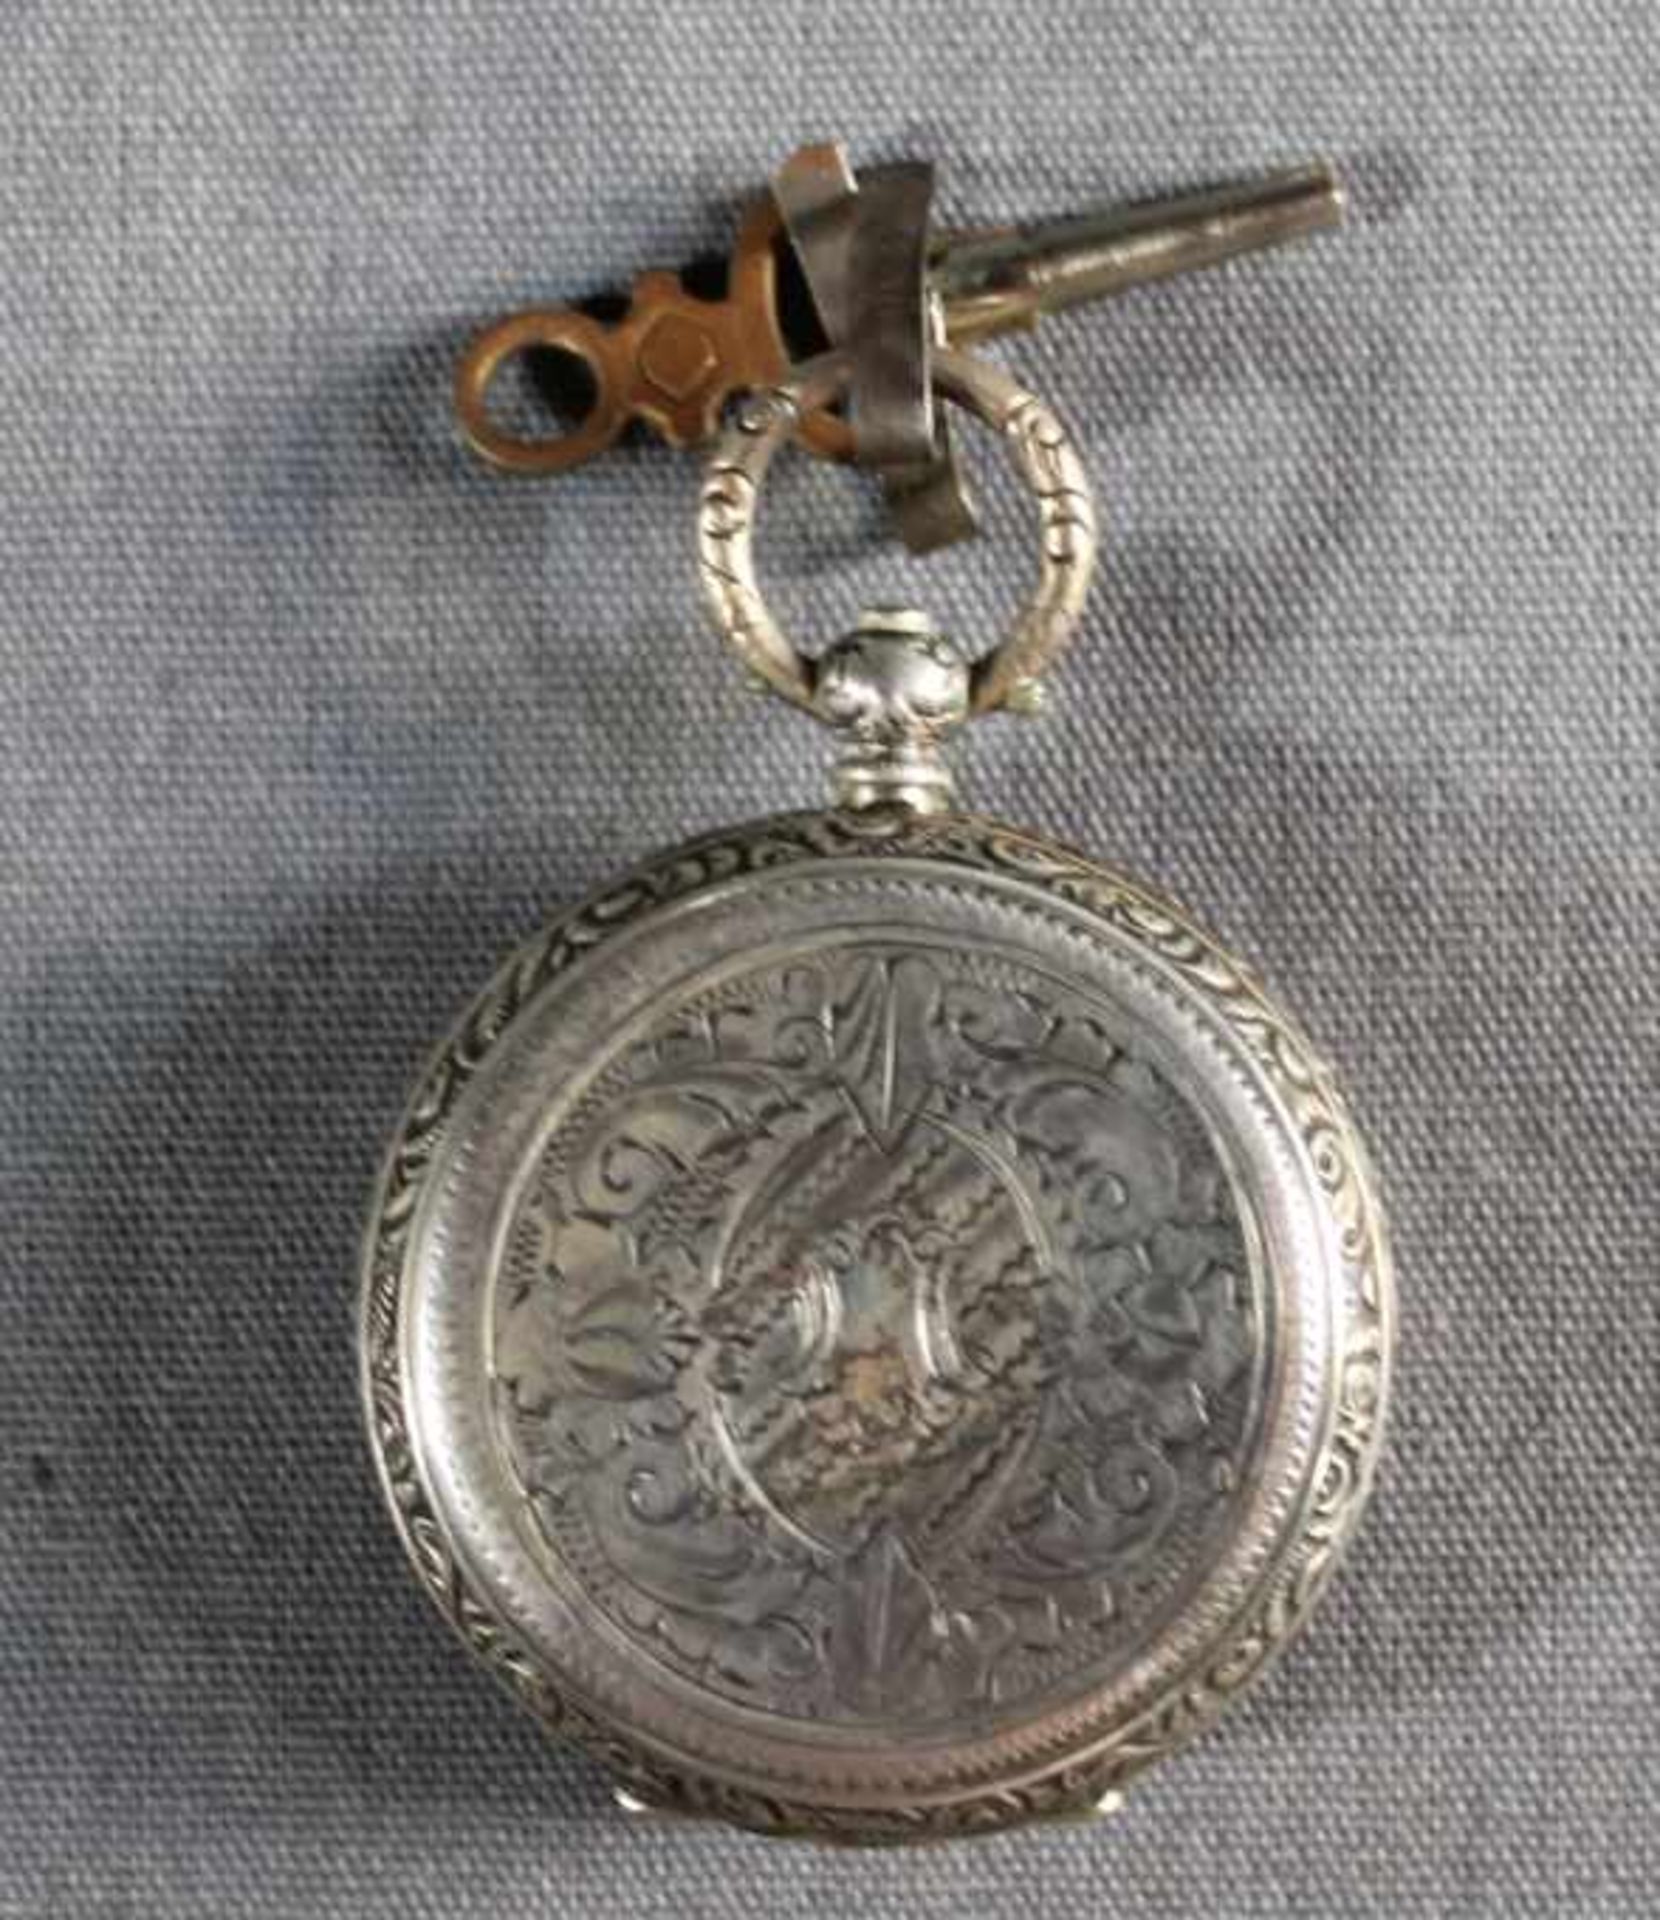 1 kleine Taschenuhr, Gehäuse Silber (800/000), punziert, Schlüsselaufzug, Schlüssel vorhanden, - Bild 2 aus 5